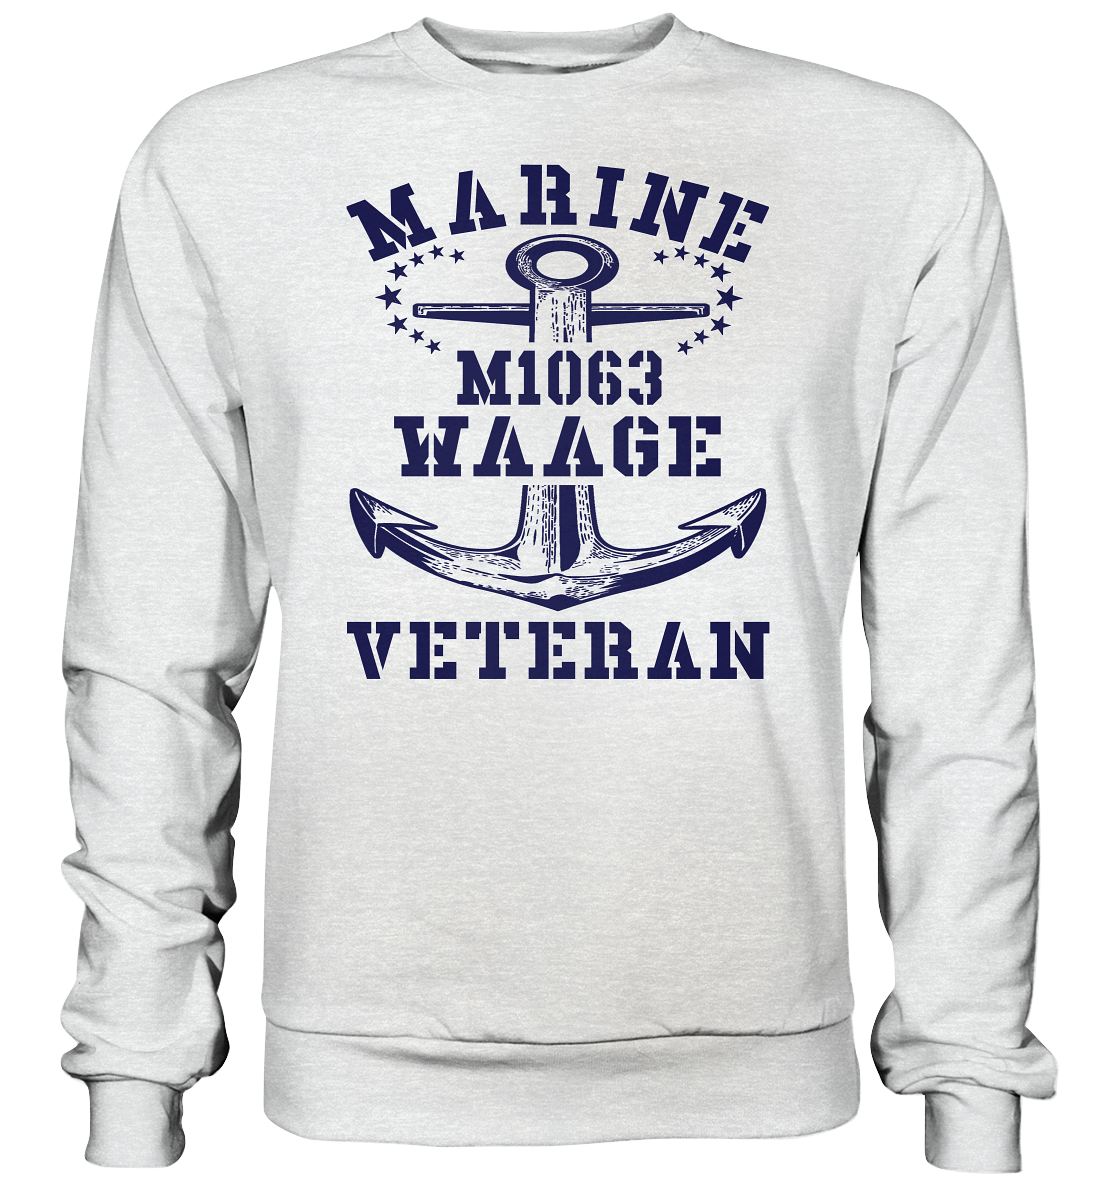 SM-Boot M1063 WAAGE Marine Veteran - Premium Sweatshirt